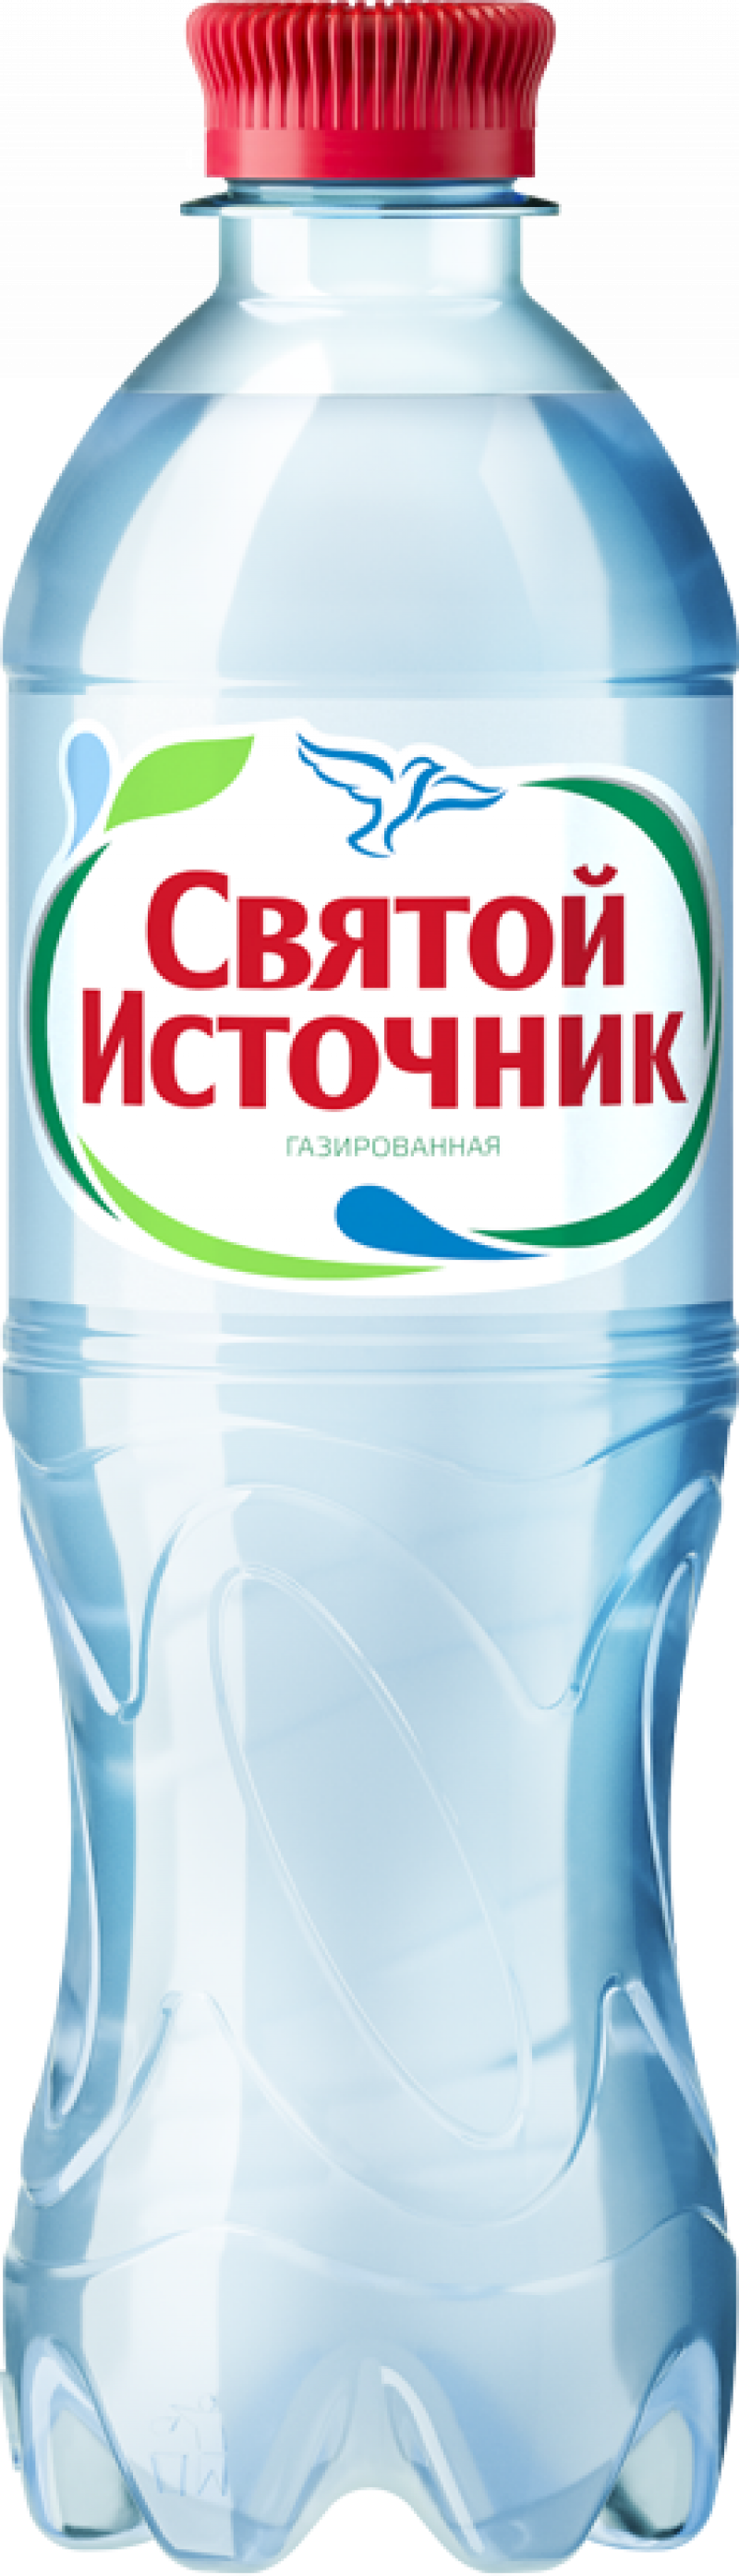 Вода ТМ СВЯТОЙ ИСТОЧНИК 0,5л. пет газ